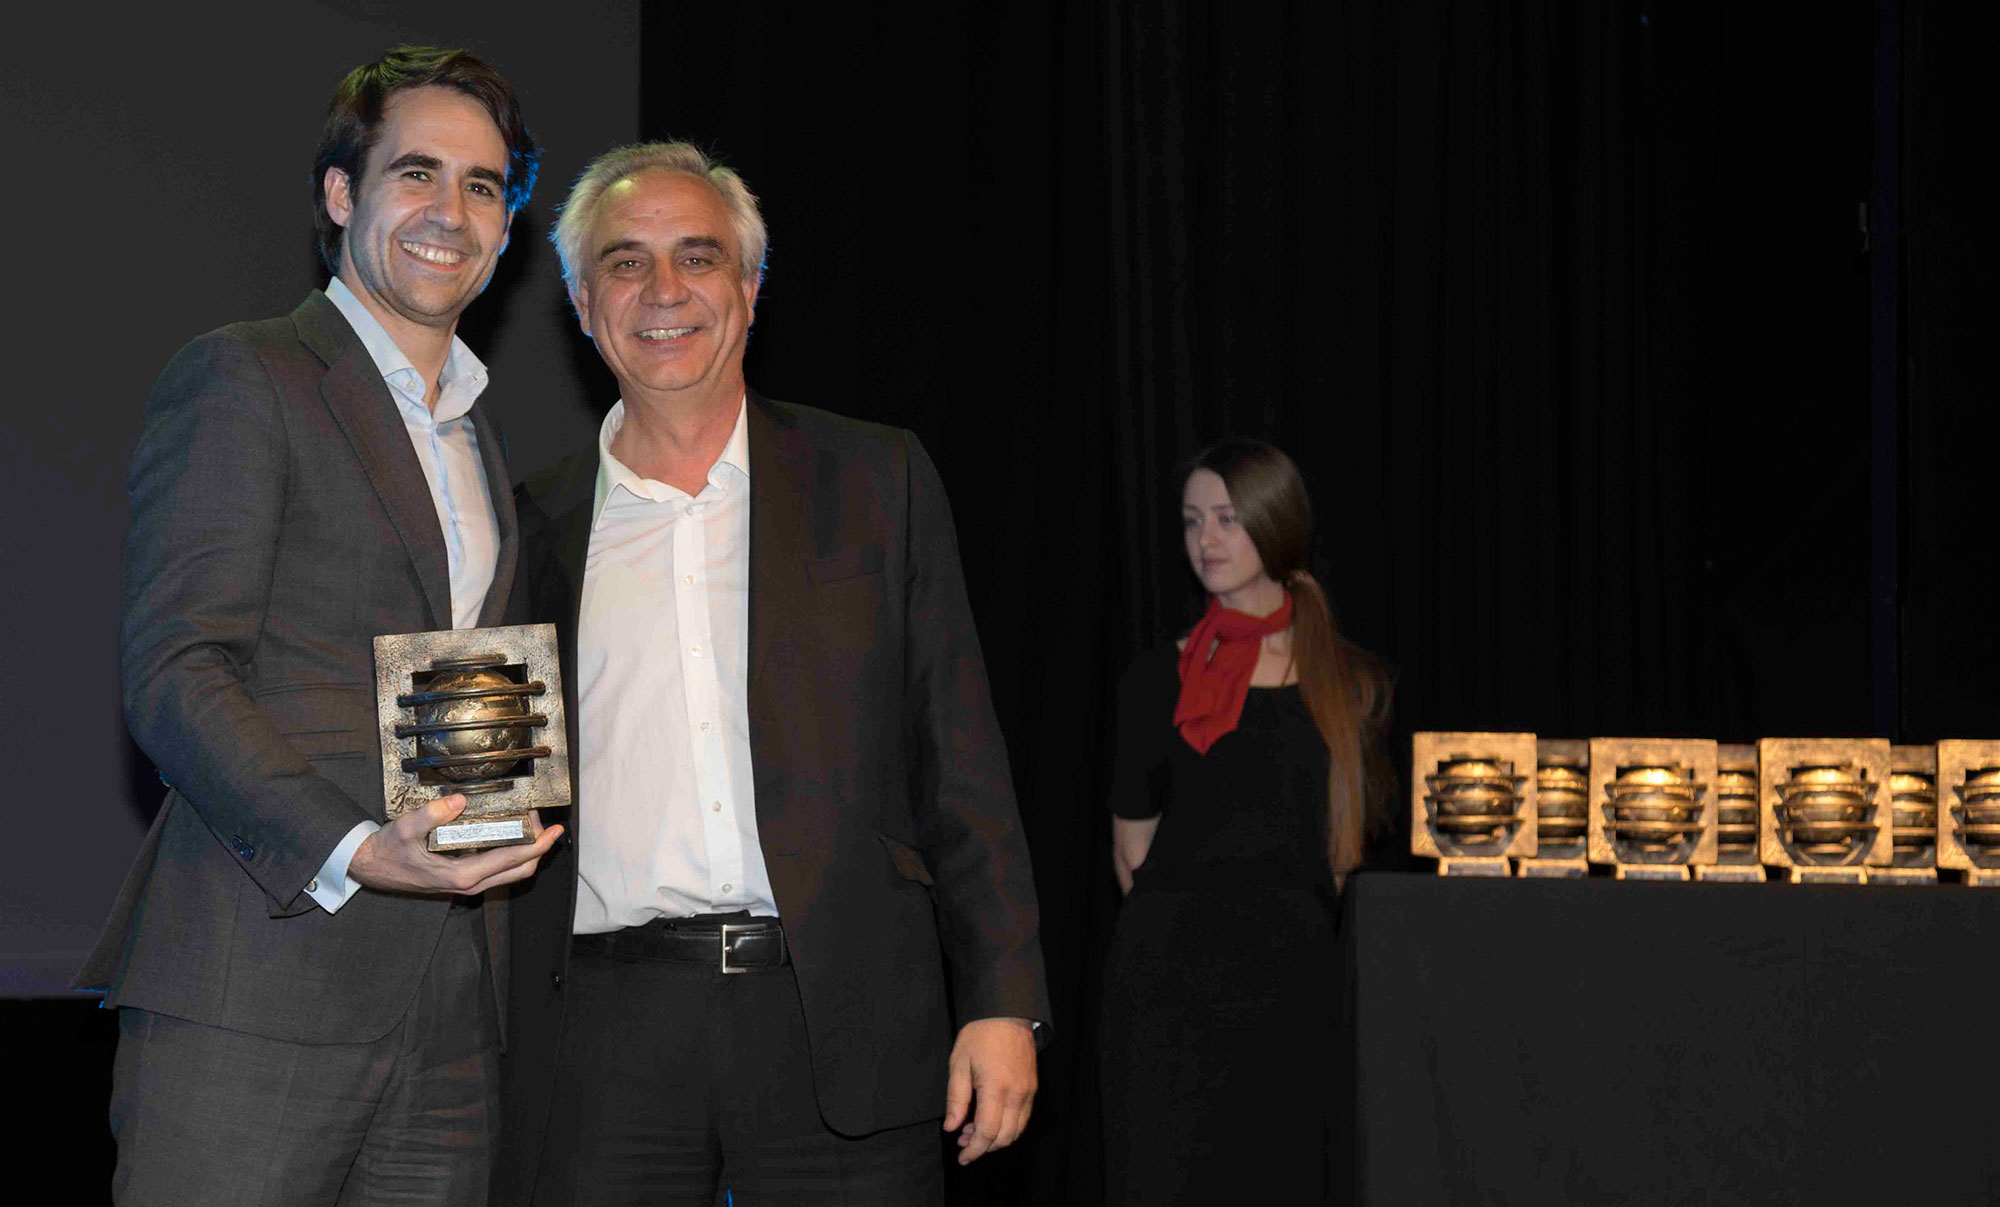 Francisco Trillo recogiendo el premio de ganador en la categora de seguridad en la pasada edicin de los Premios ComunicacionesHoy...